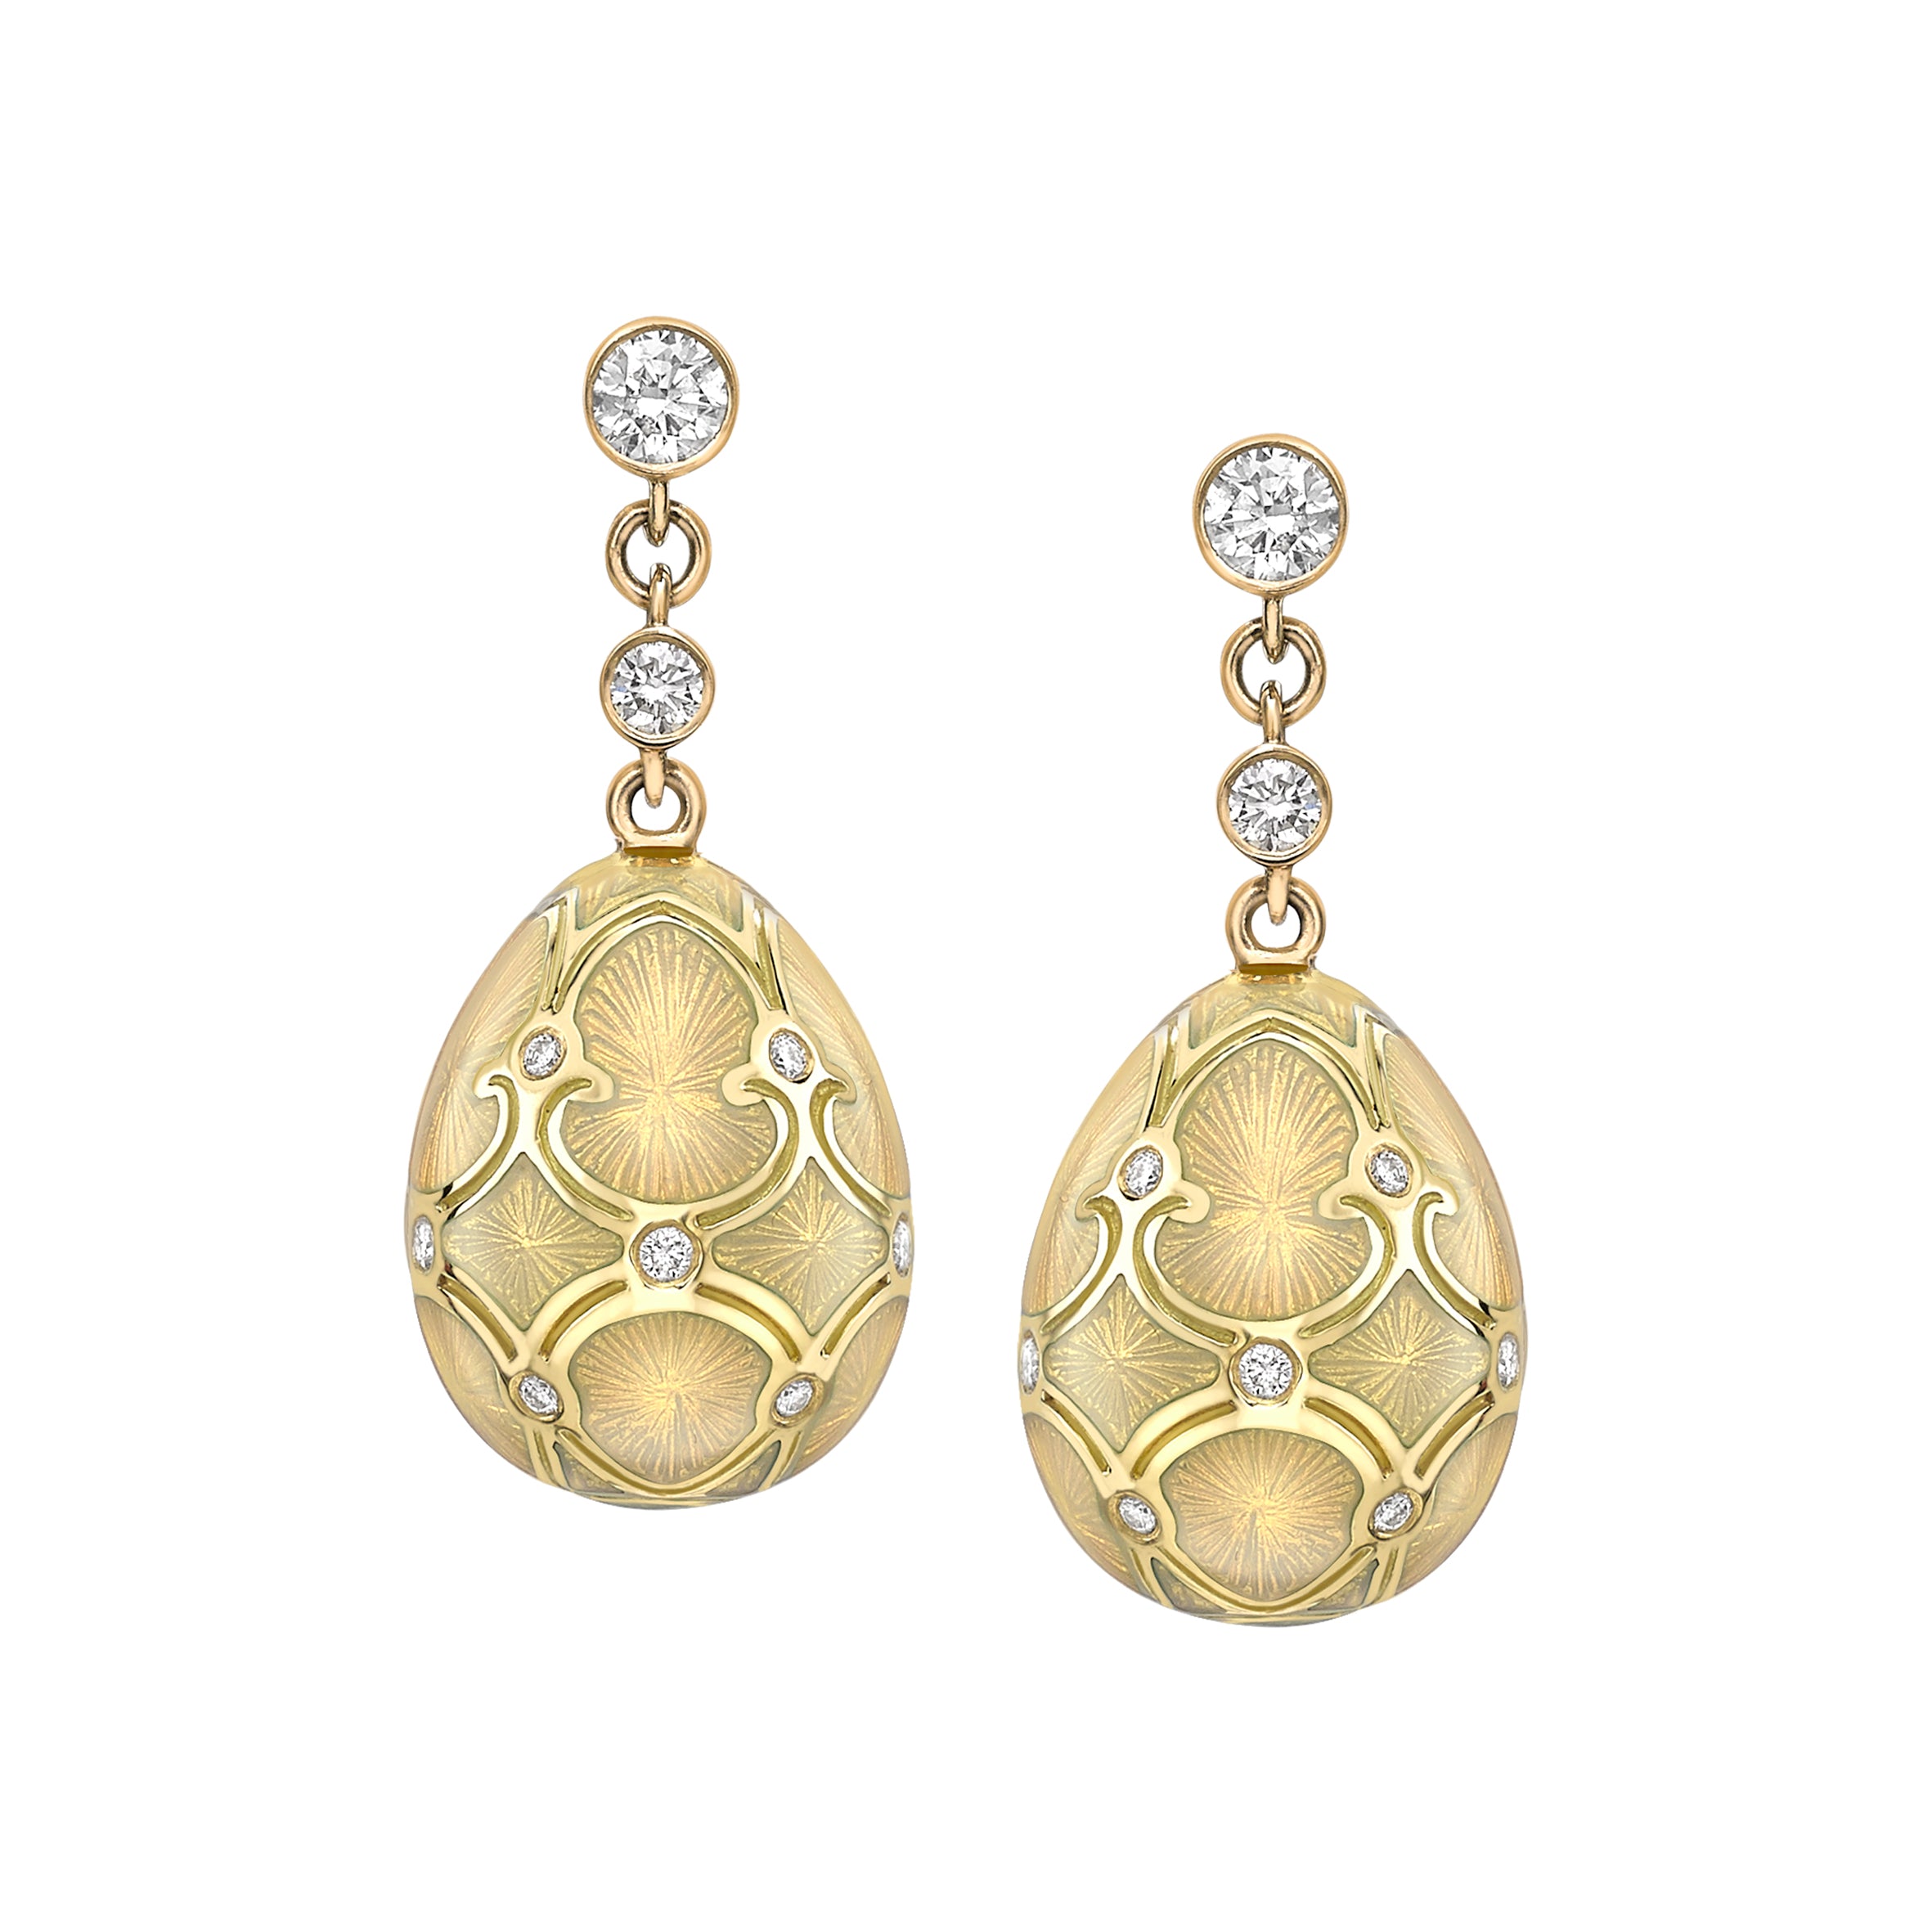 Heritage Yellow Gold Diamond & Opalescent Guilloché Enamel Egg Drop Earrings